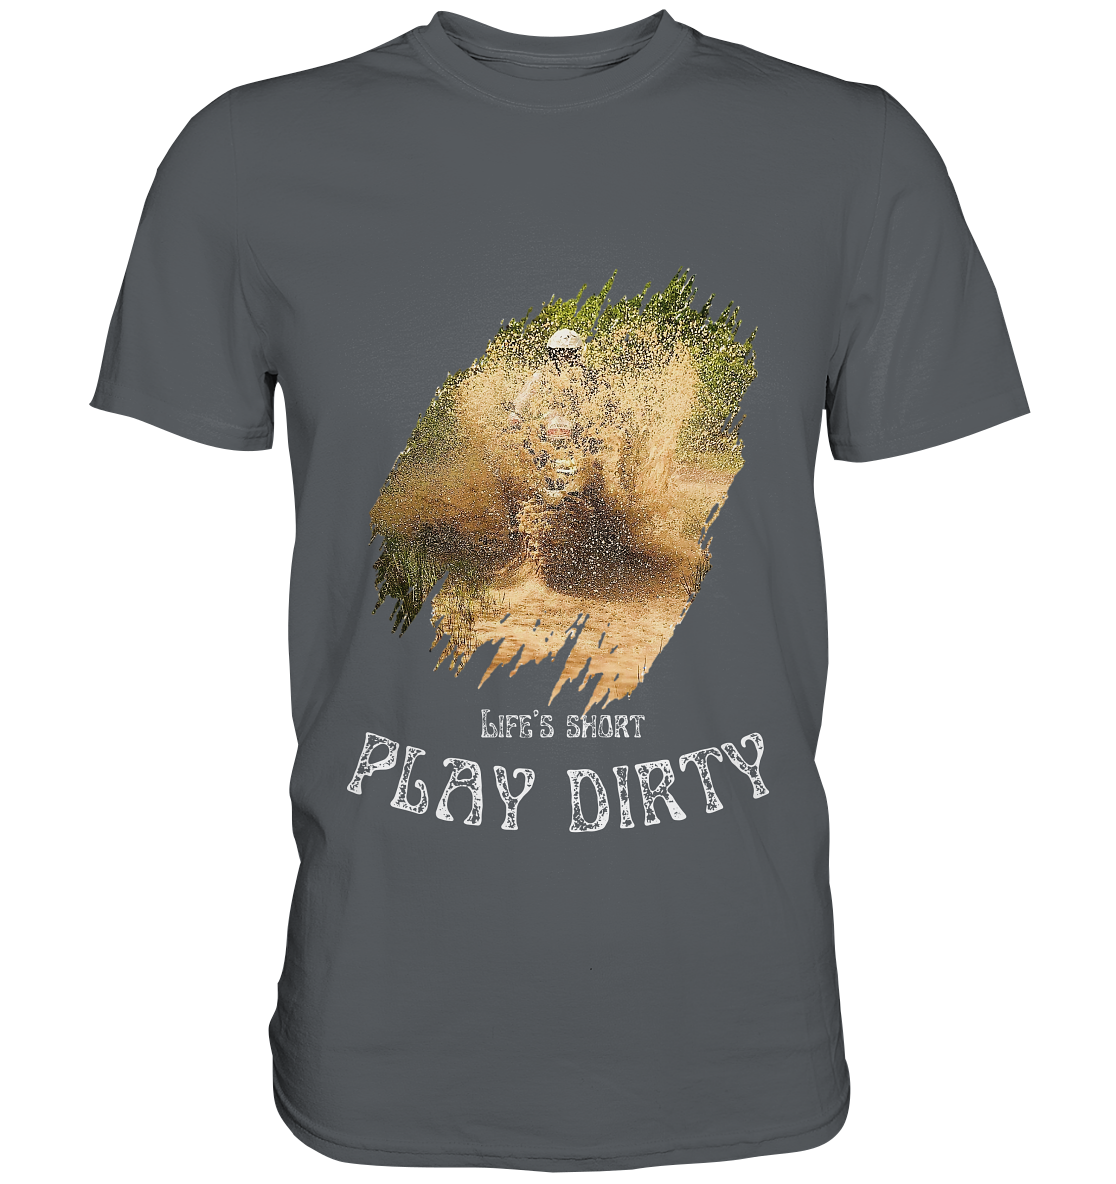 "Life's short - play dirty" 1 _ helles Design | Shirt für Jürgen P.